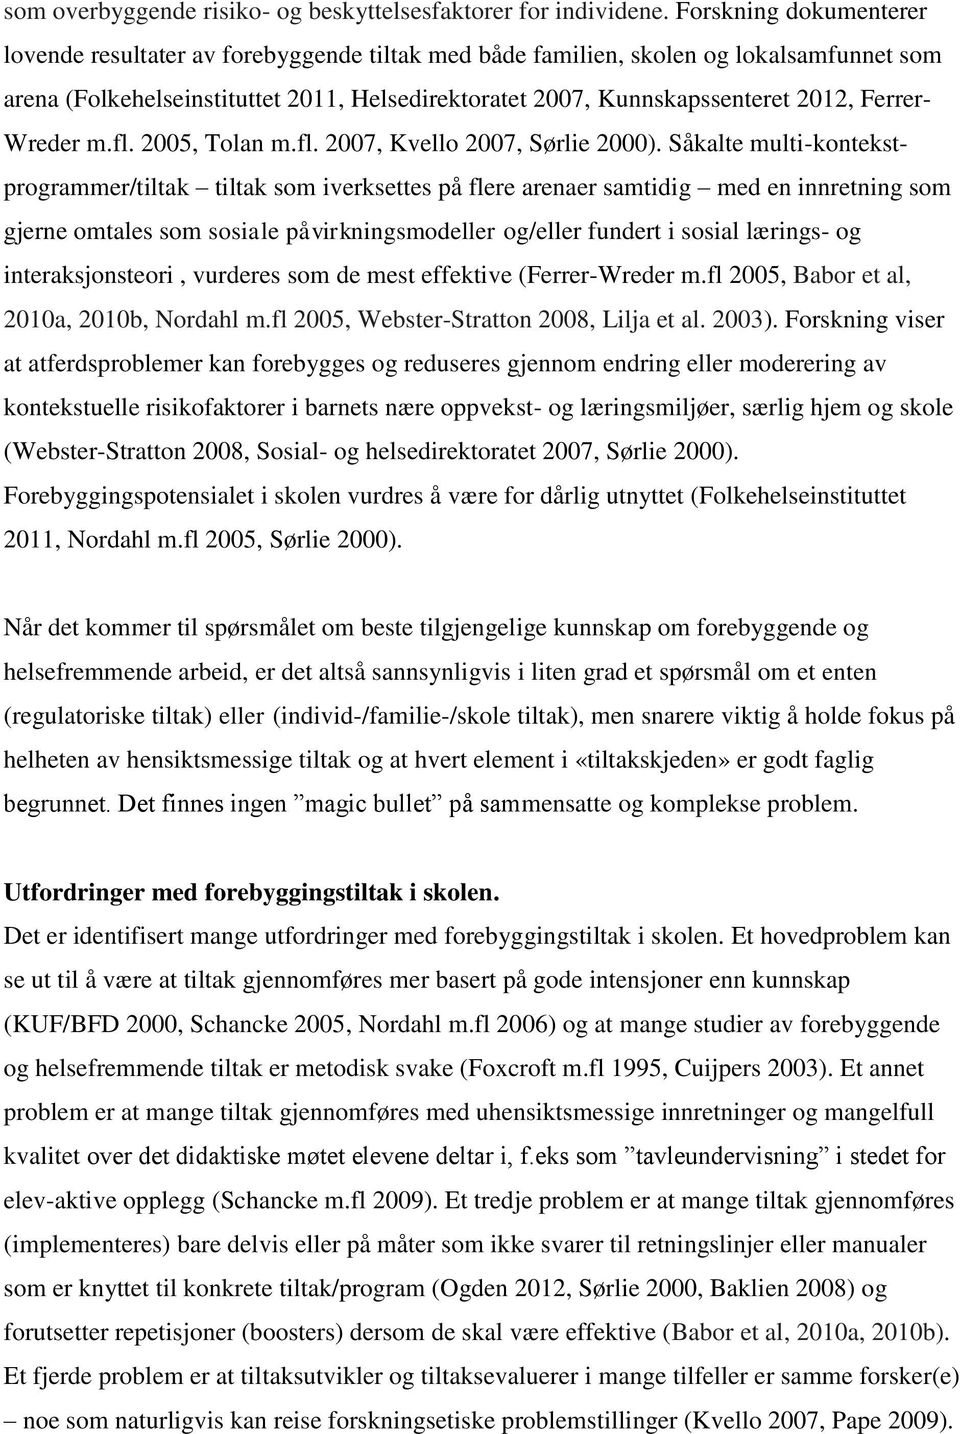 Ferrer- Wreder m.fl. 2005, Tolan m.fl. 2007, Kvello 2007, Sørlie 2000).